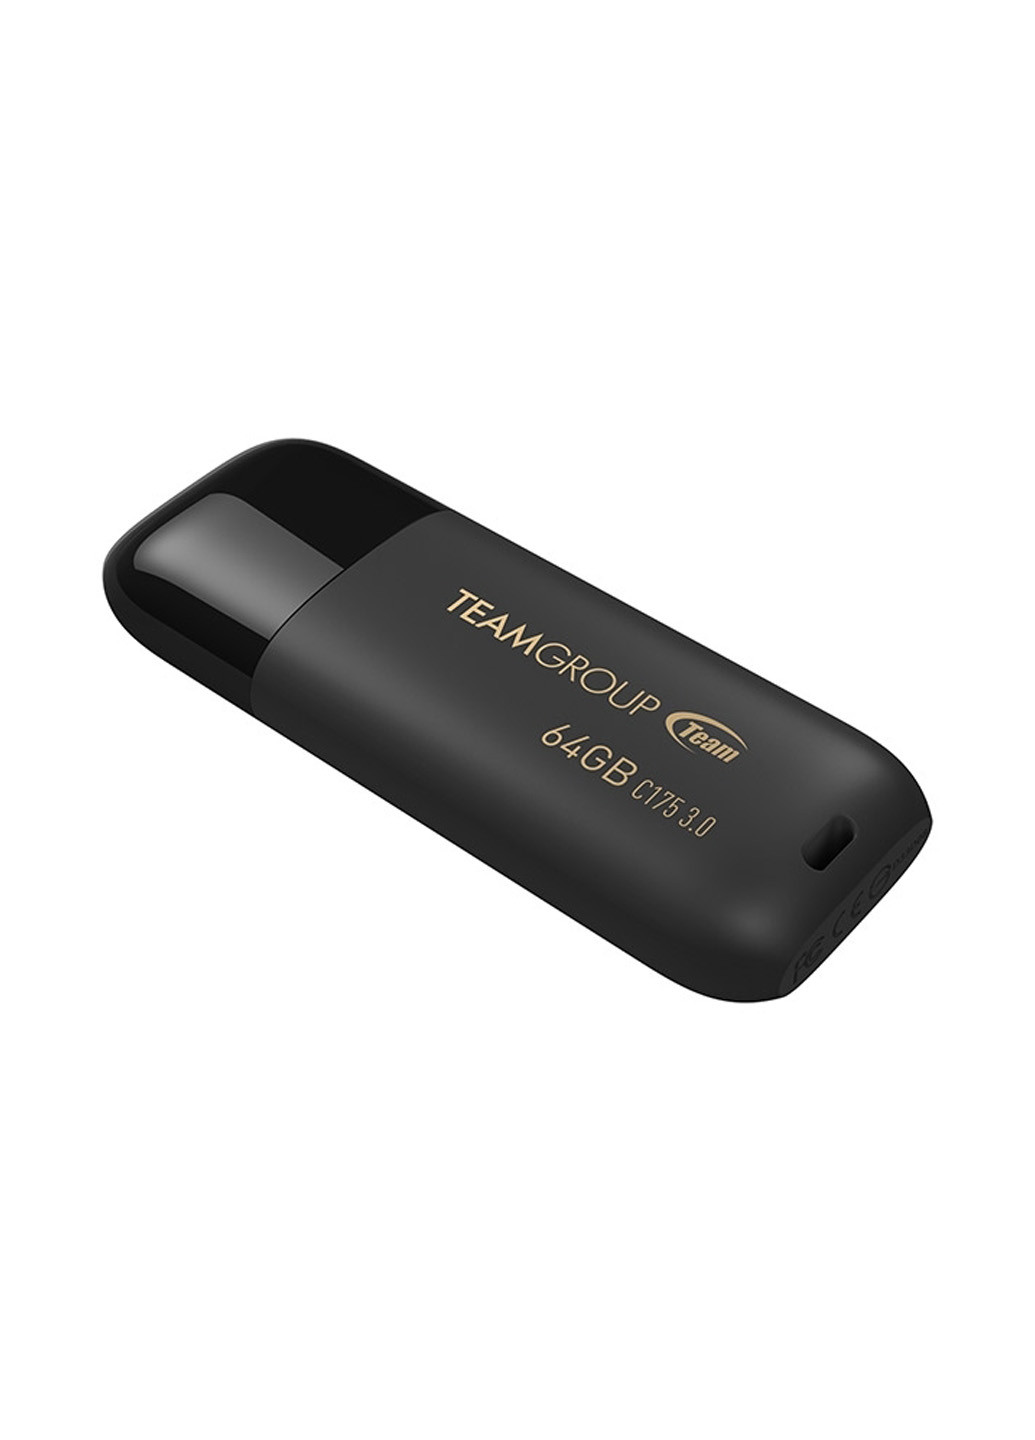 Флеш пам'ять USB C175 64GB Pearl Black (TC175364GB01) Team флеш память usb team c175 64gb pearl black (tc175364gb01) (134201694)